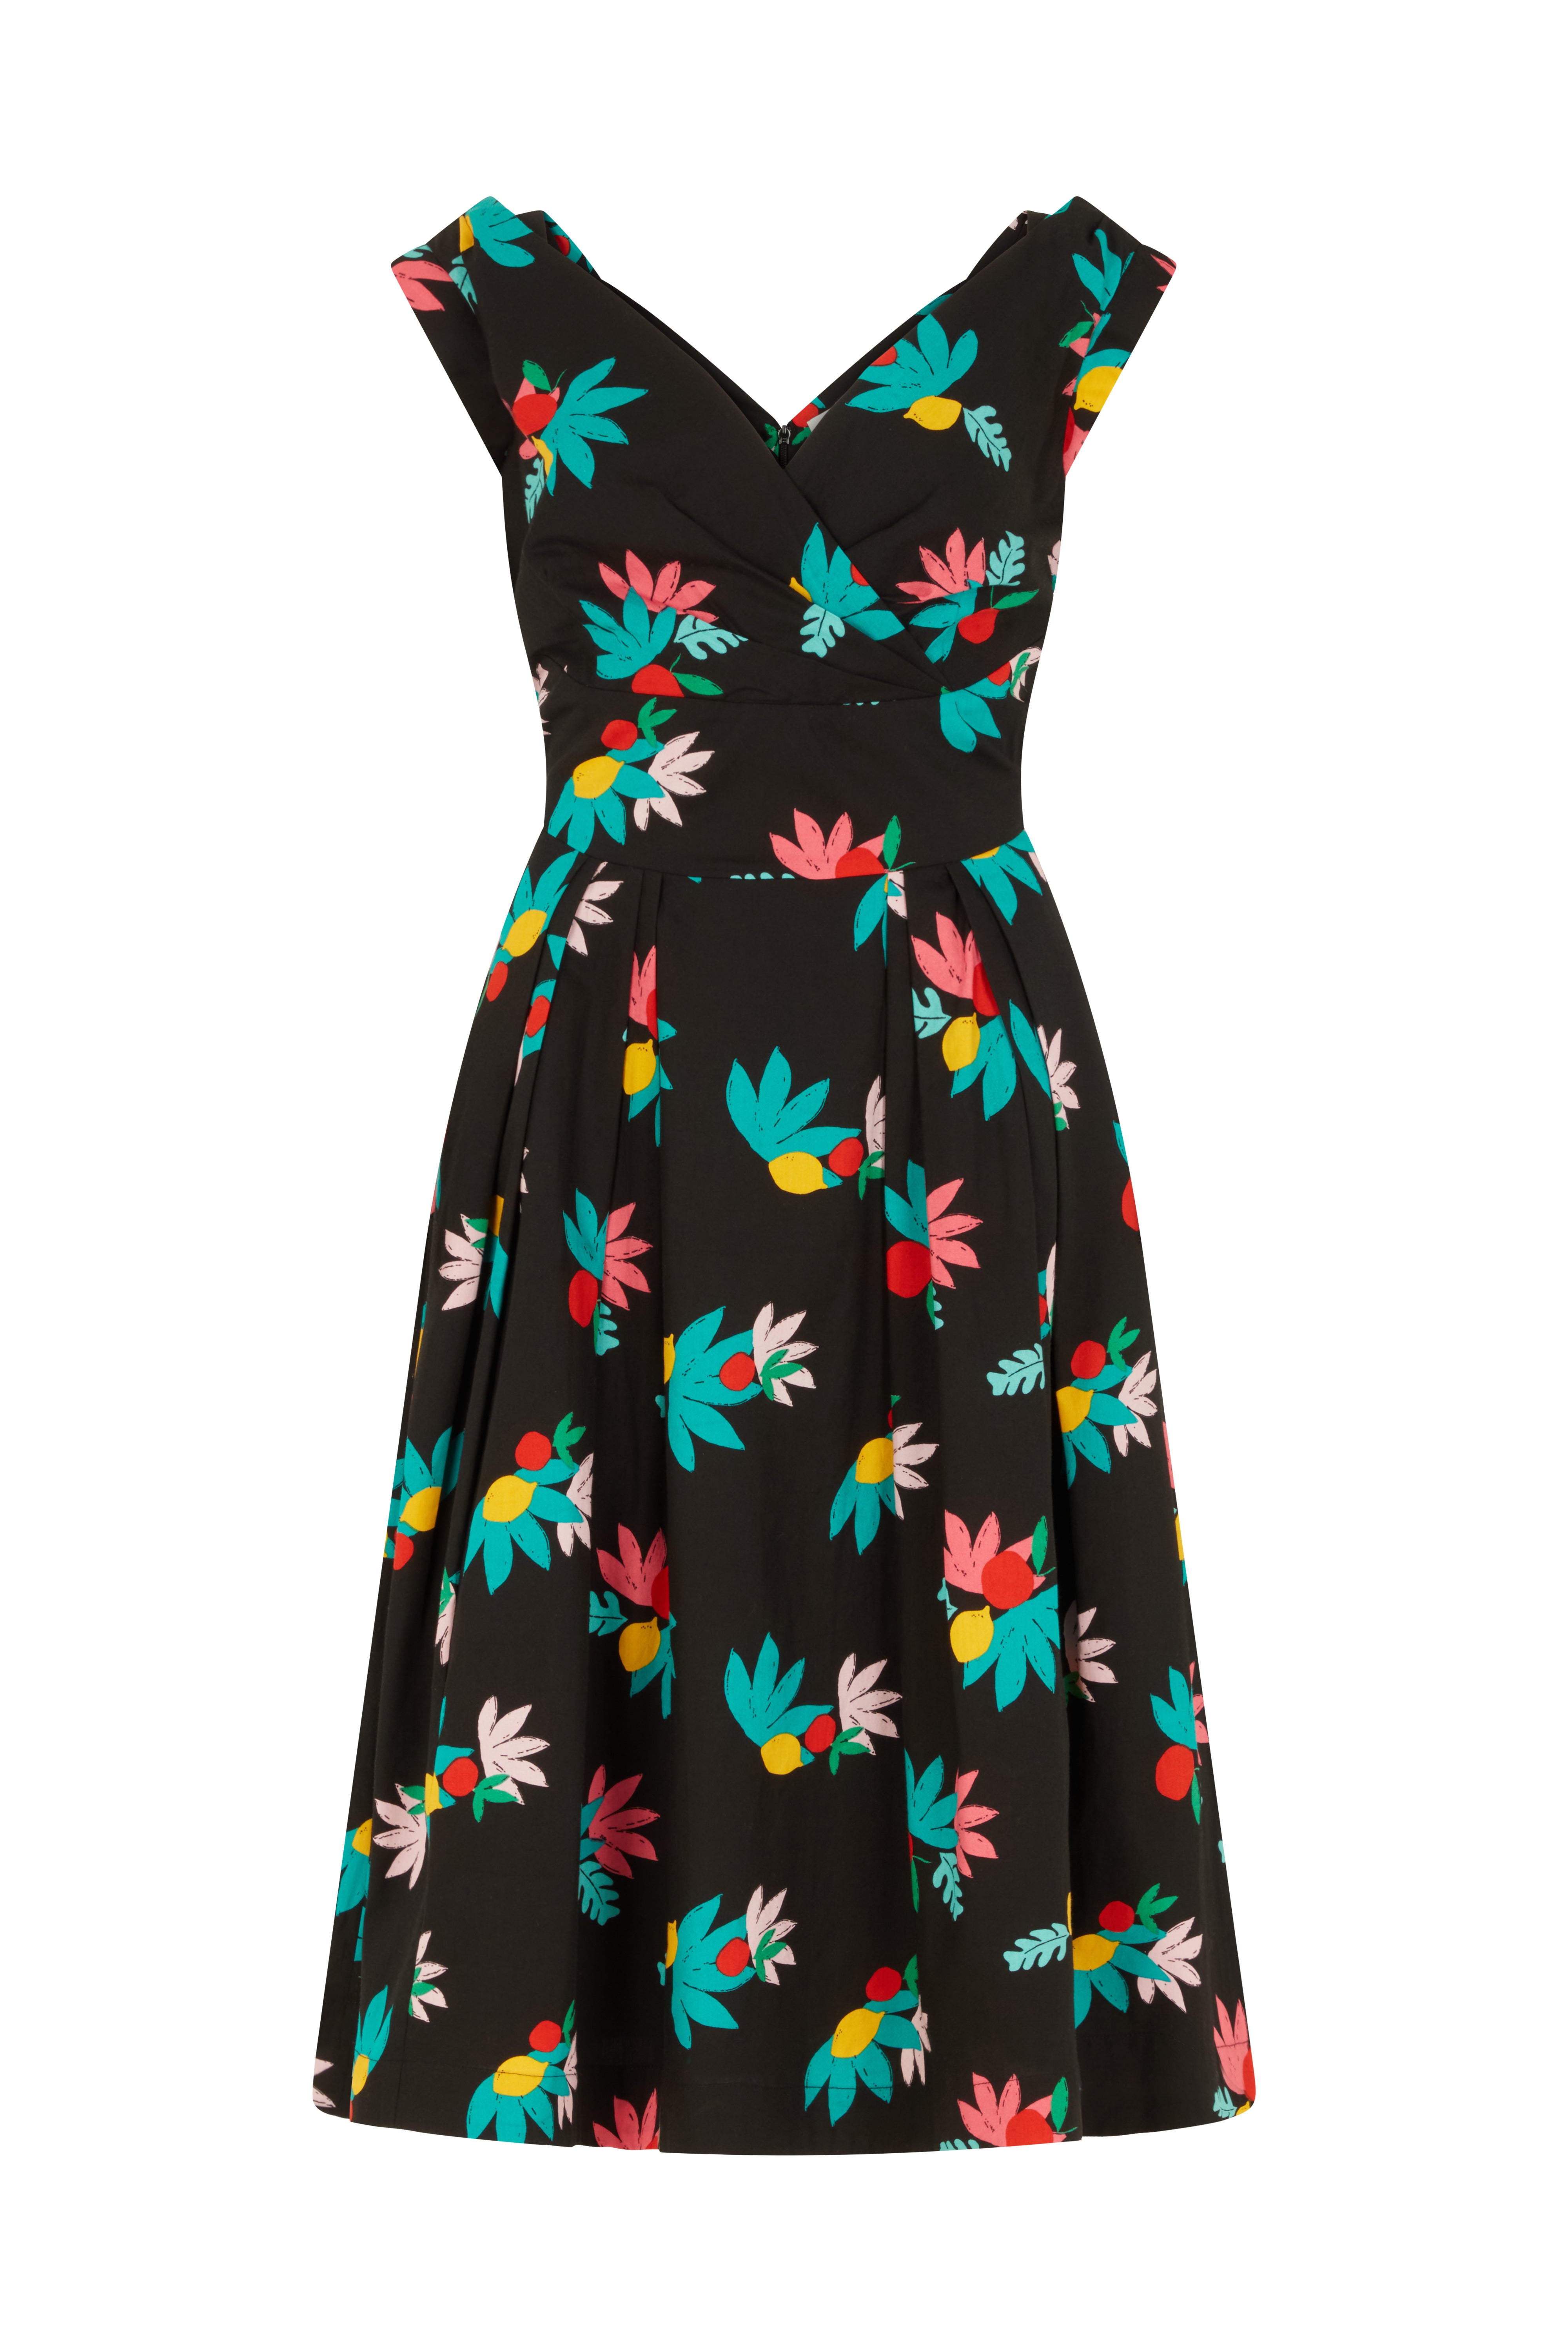 Image of Florence Black Summer Fruits Dress PRE-ORDER Spring/Summer 2024 - Dress